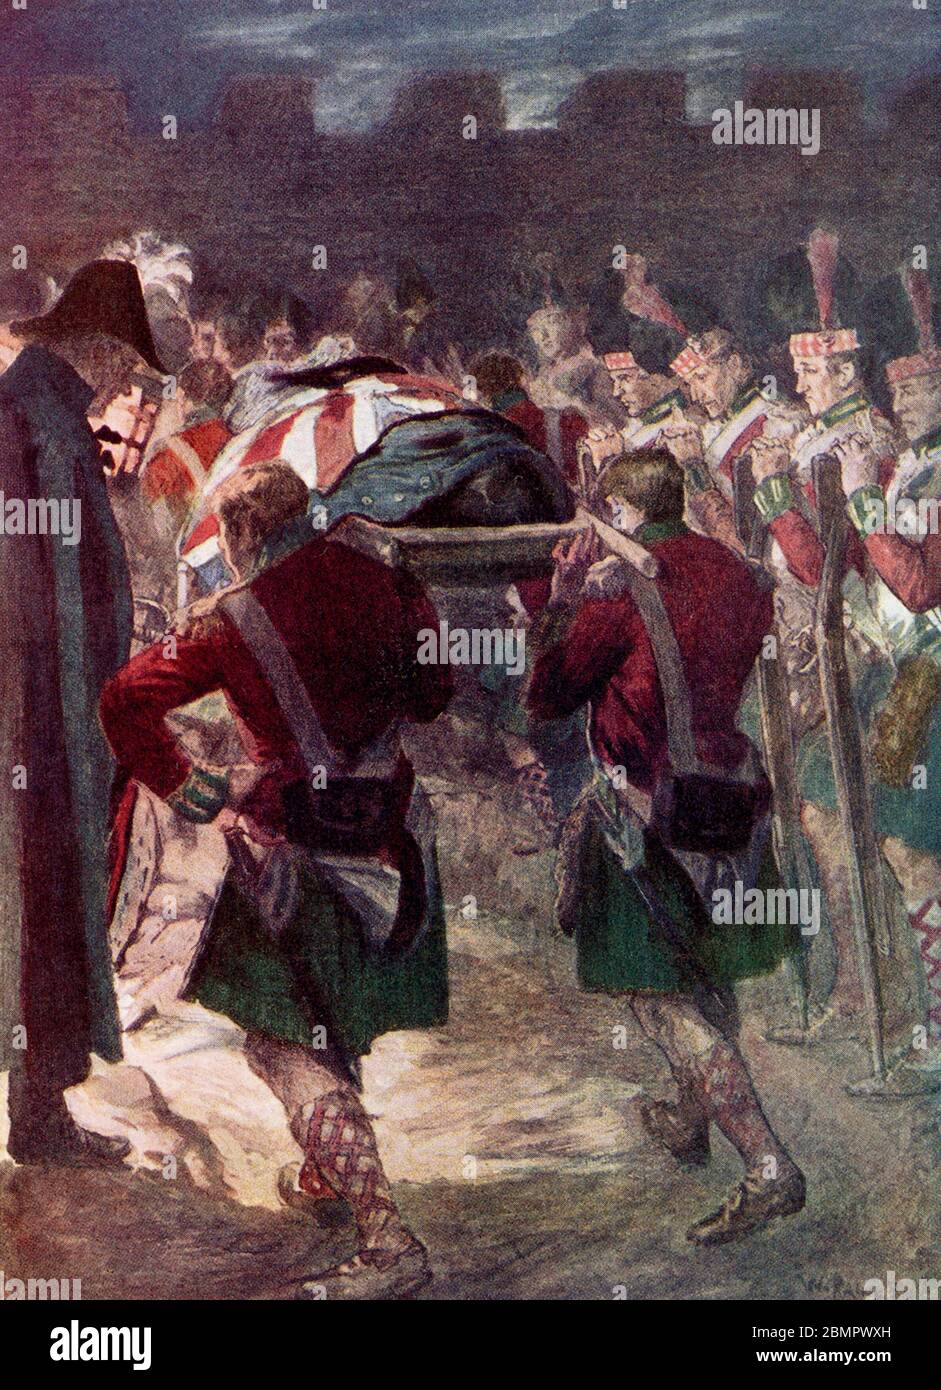 Generalleutnant Sir John Moore (1761-1809) war ein britischer Armeegeneral, der auch als Moore von Corunna bekannt war. Er ist vor allem für seine militärischen Trainingsreformen und für seinen Tod in der Schlacht von Corunna bekannt, in der er während des Peninsularkrieges eine französische Armee unter Marschall Soult abwehrte. Moore wurde in einem militärischen Mantel in den Wällen der Stadt begraben. Moores Beerdigung wurde in dem Gedicht "The Burial of Sir John Moore after Corunna" des irischen Dichters Charles Wolfe gedenkt. Stockfoto